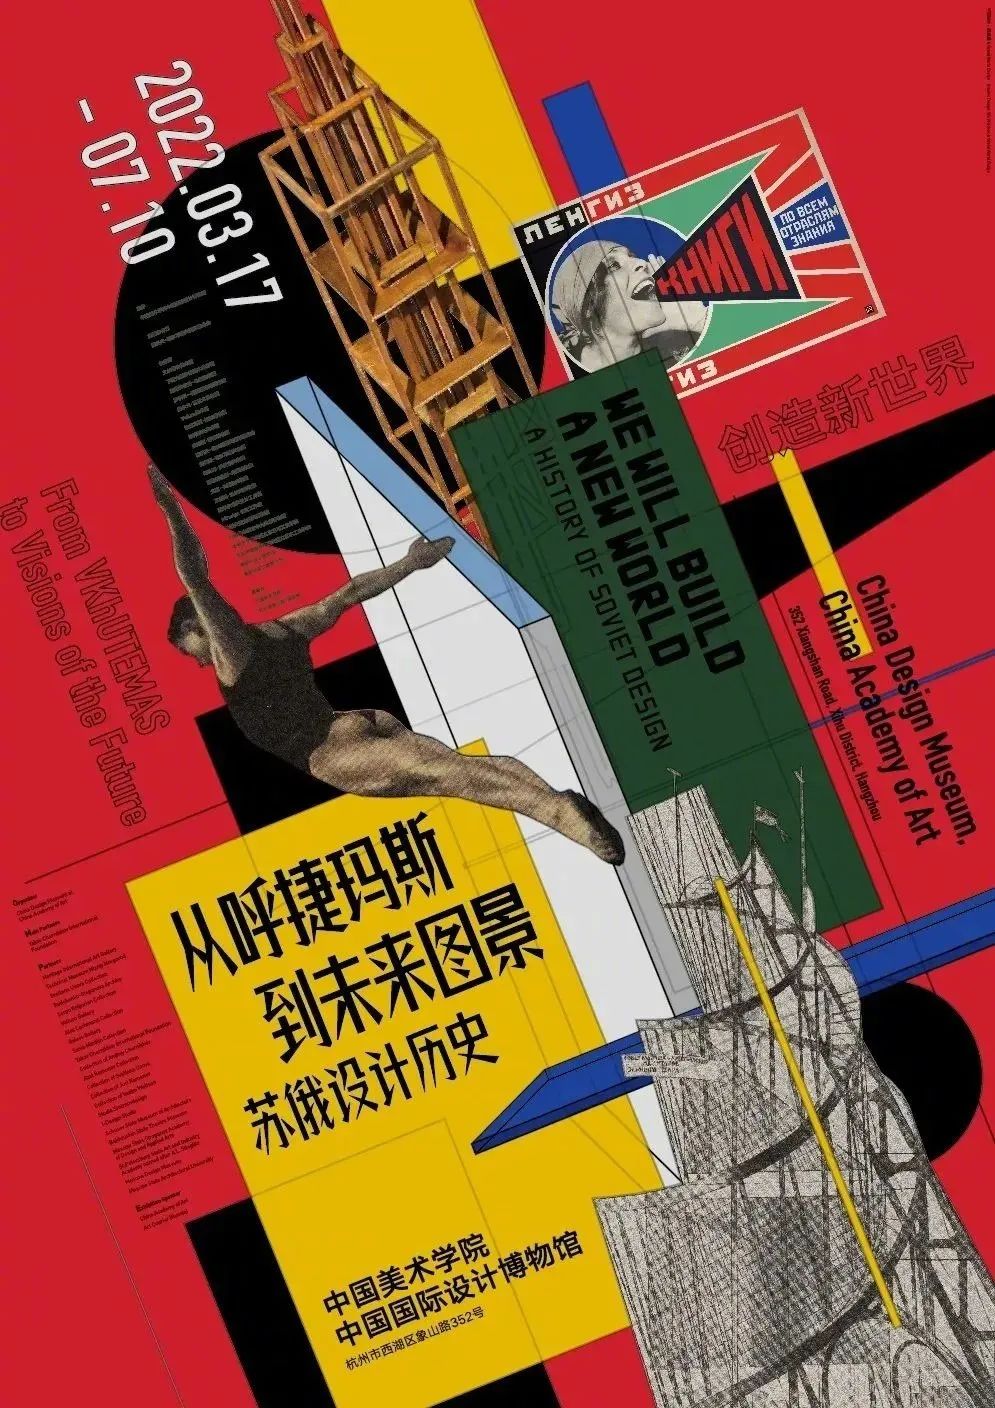 15张中文展览海报设计